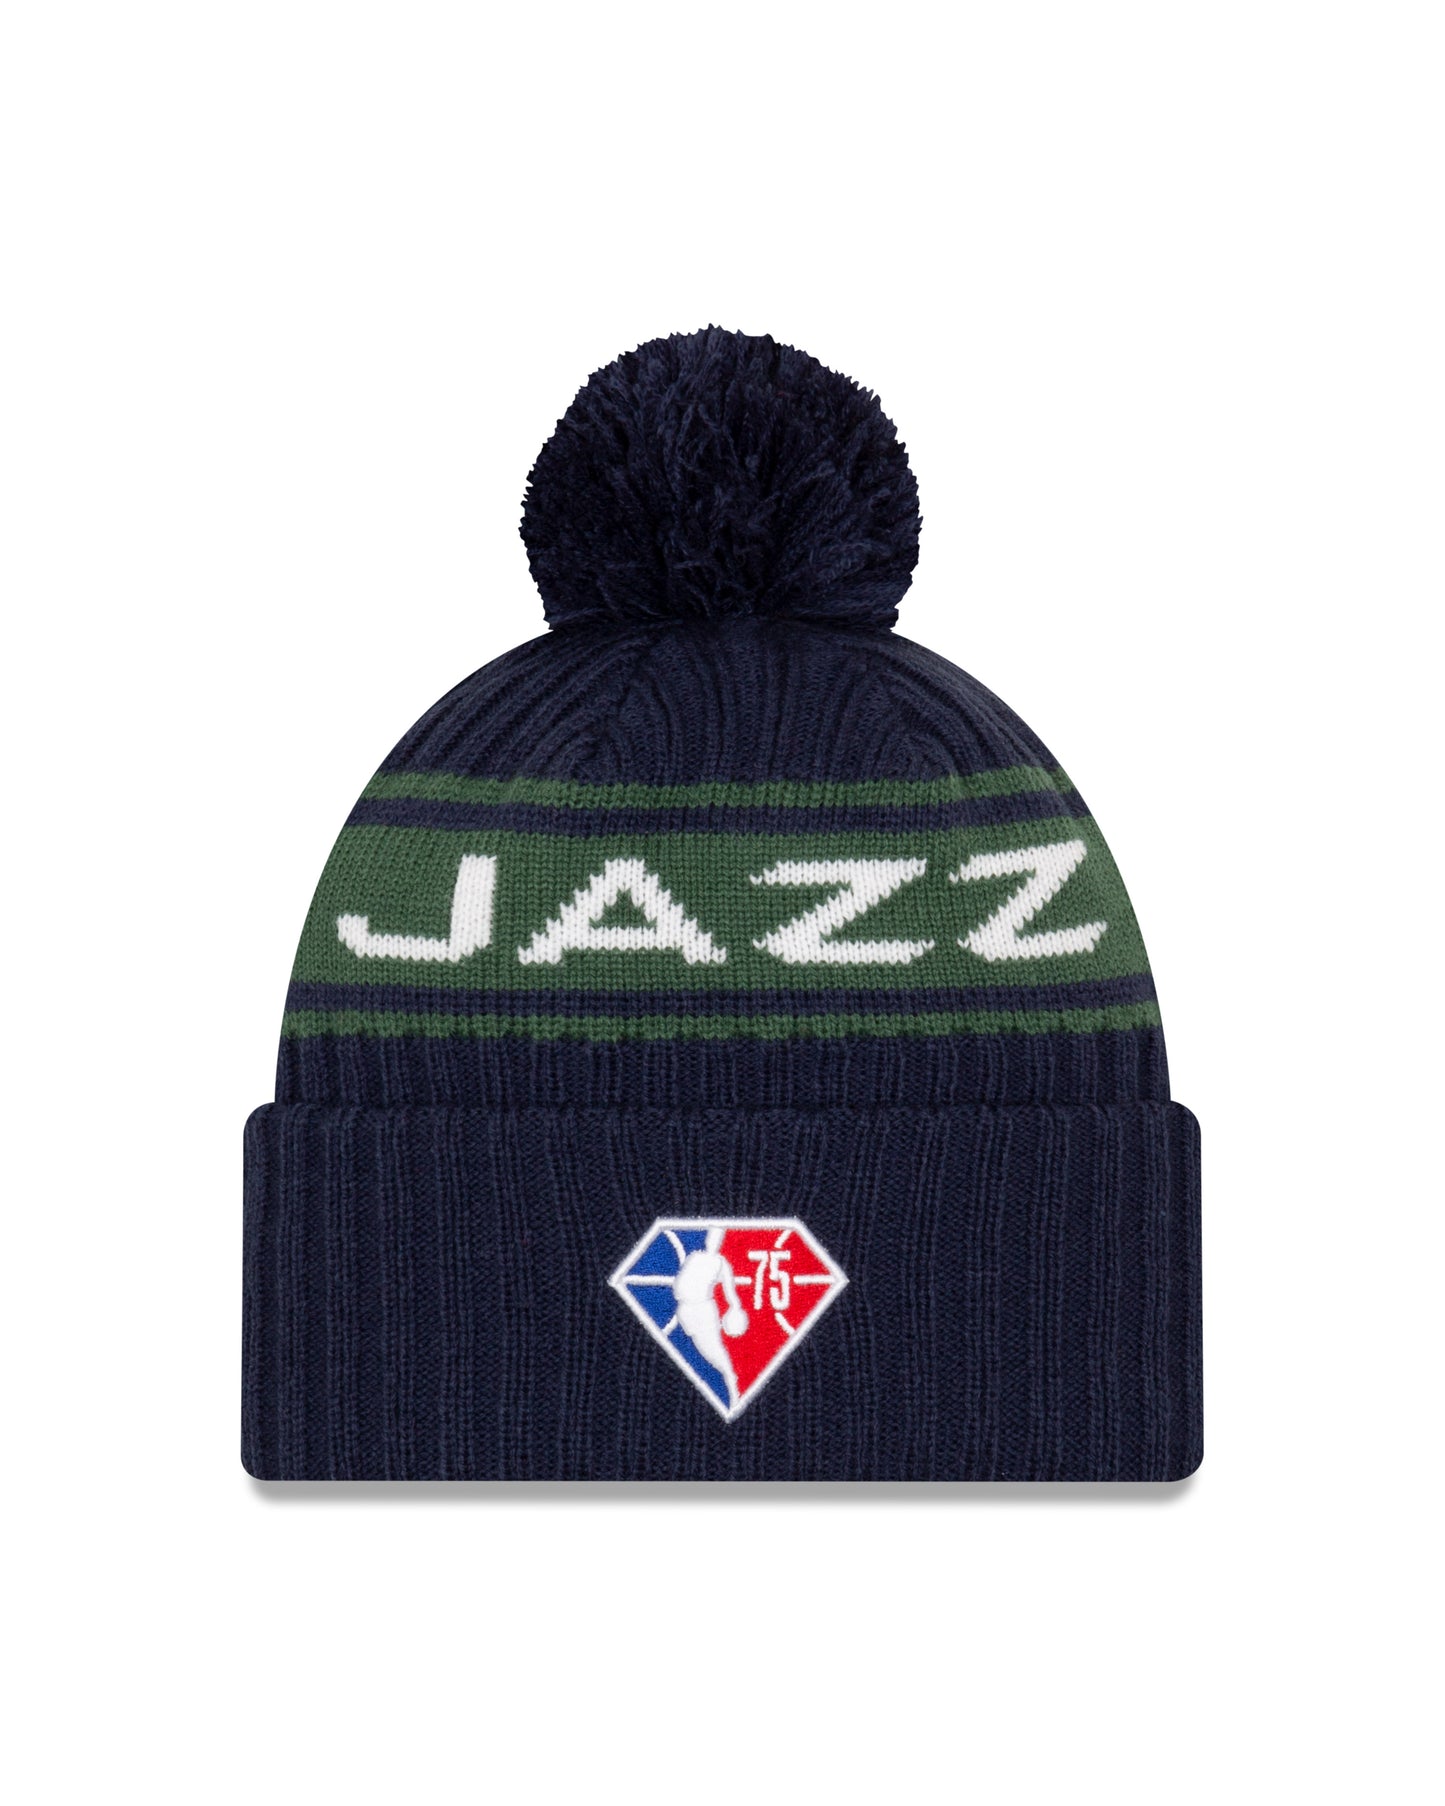 Utah Jazz New Era Draft Knit Hat